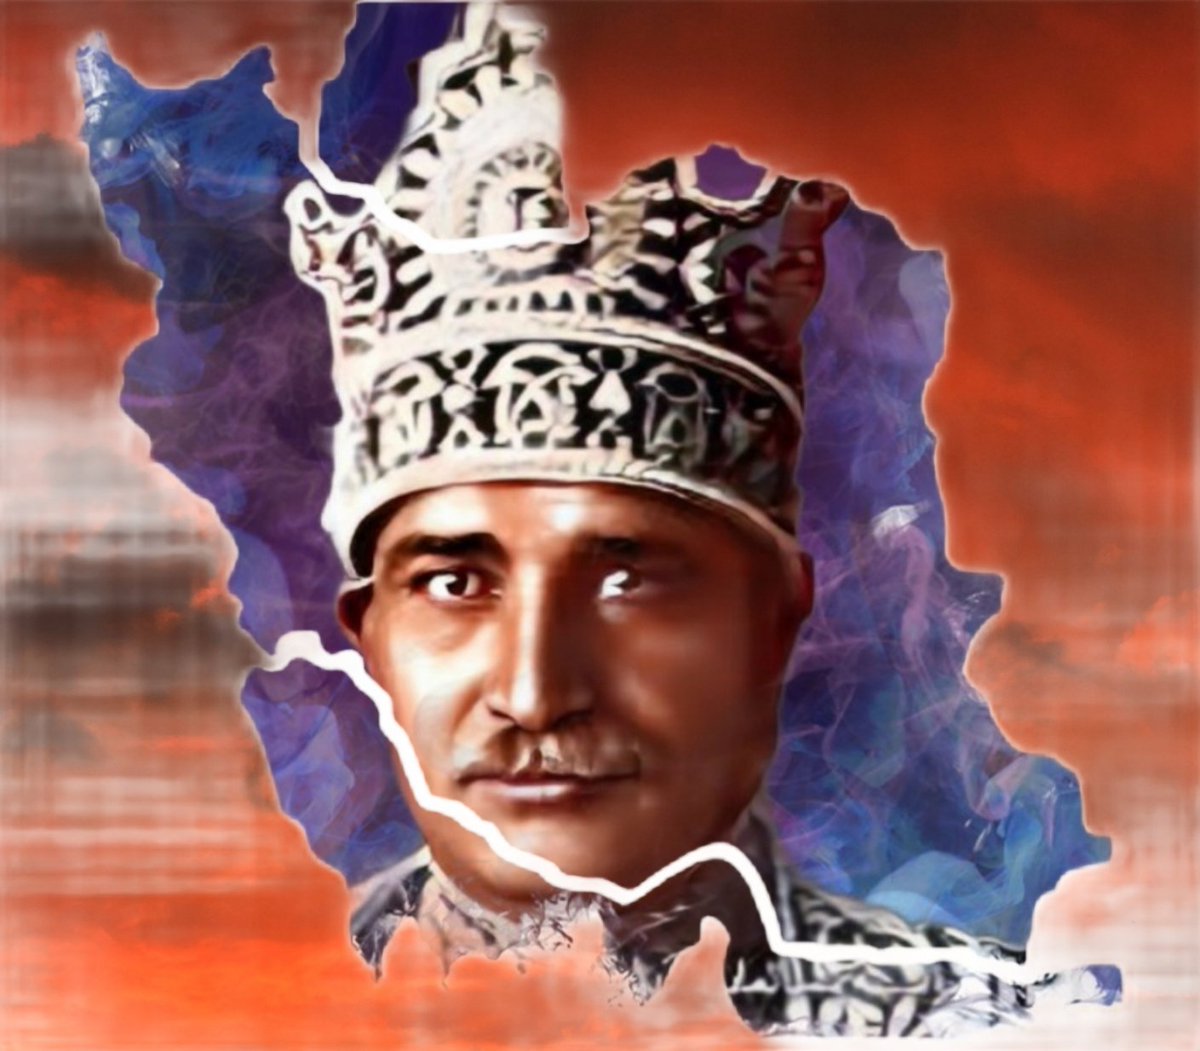 امروز چهارم اردیبهشت ، روزی که ایران؛ تاجگذاری کرد.... #رضاشاه_روحت_شاد #KingRezaPahlavi